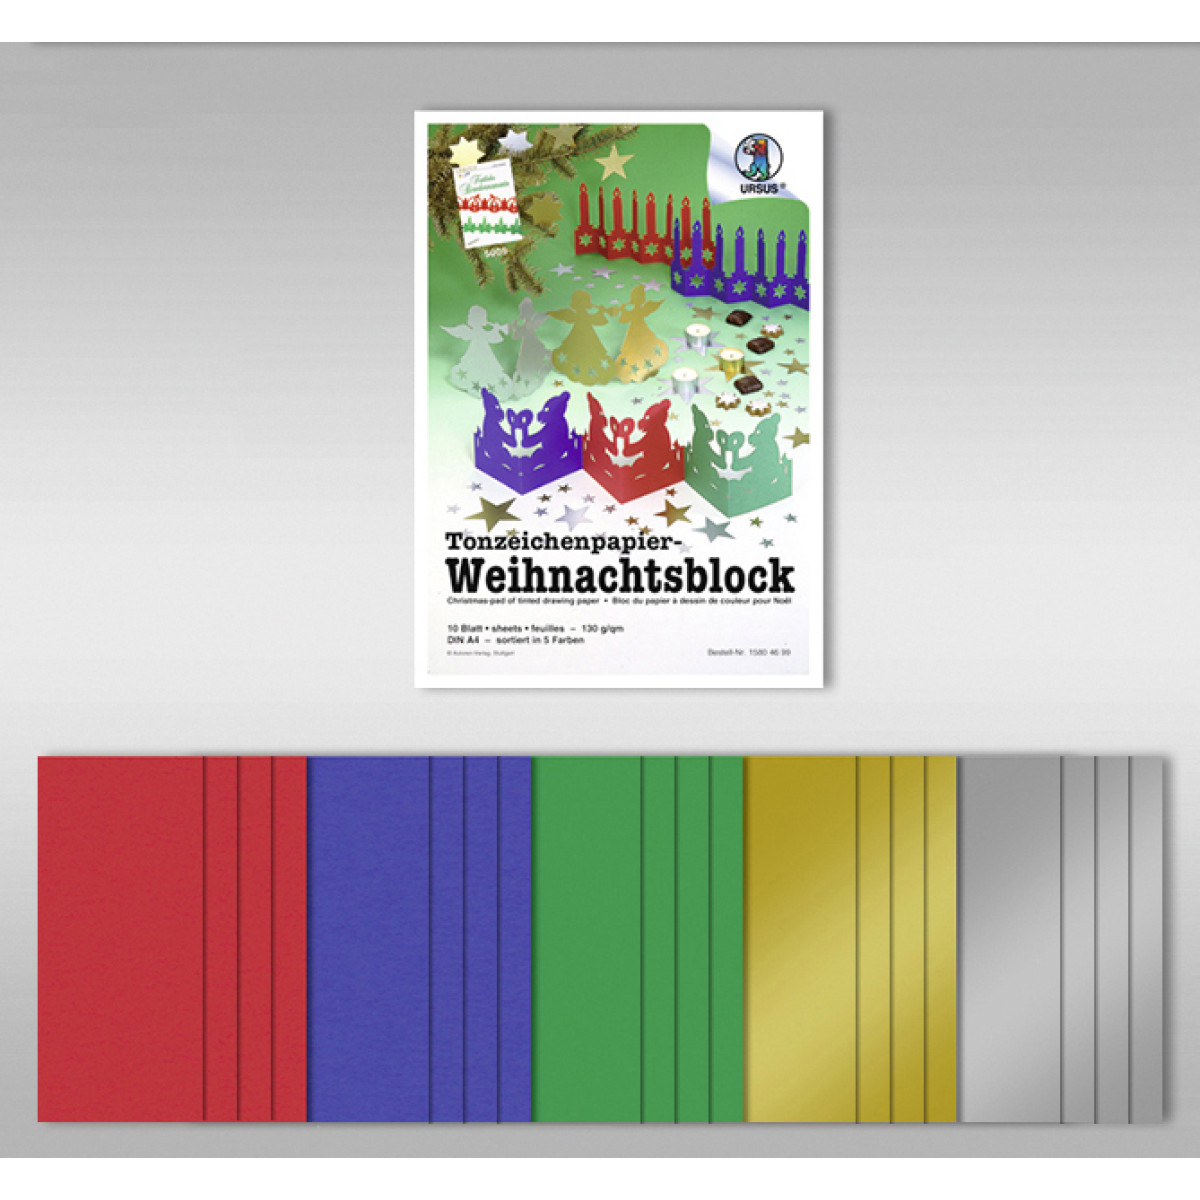 Tonzeichenpapierblock "Weihnachten" 130 g/qm DIN A4 - 20 Blatt in 5 Farben